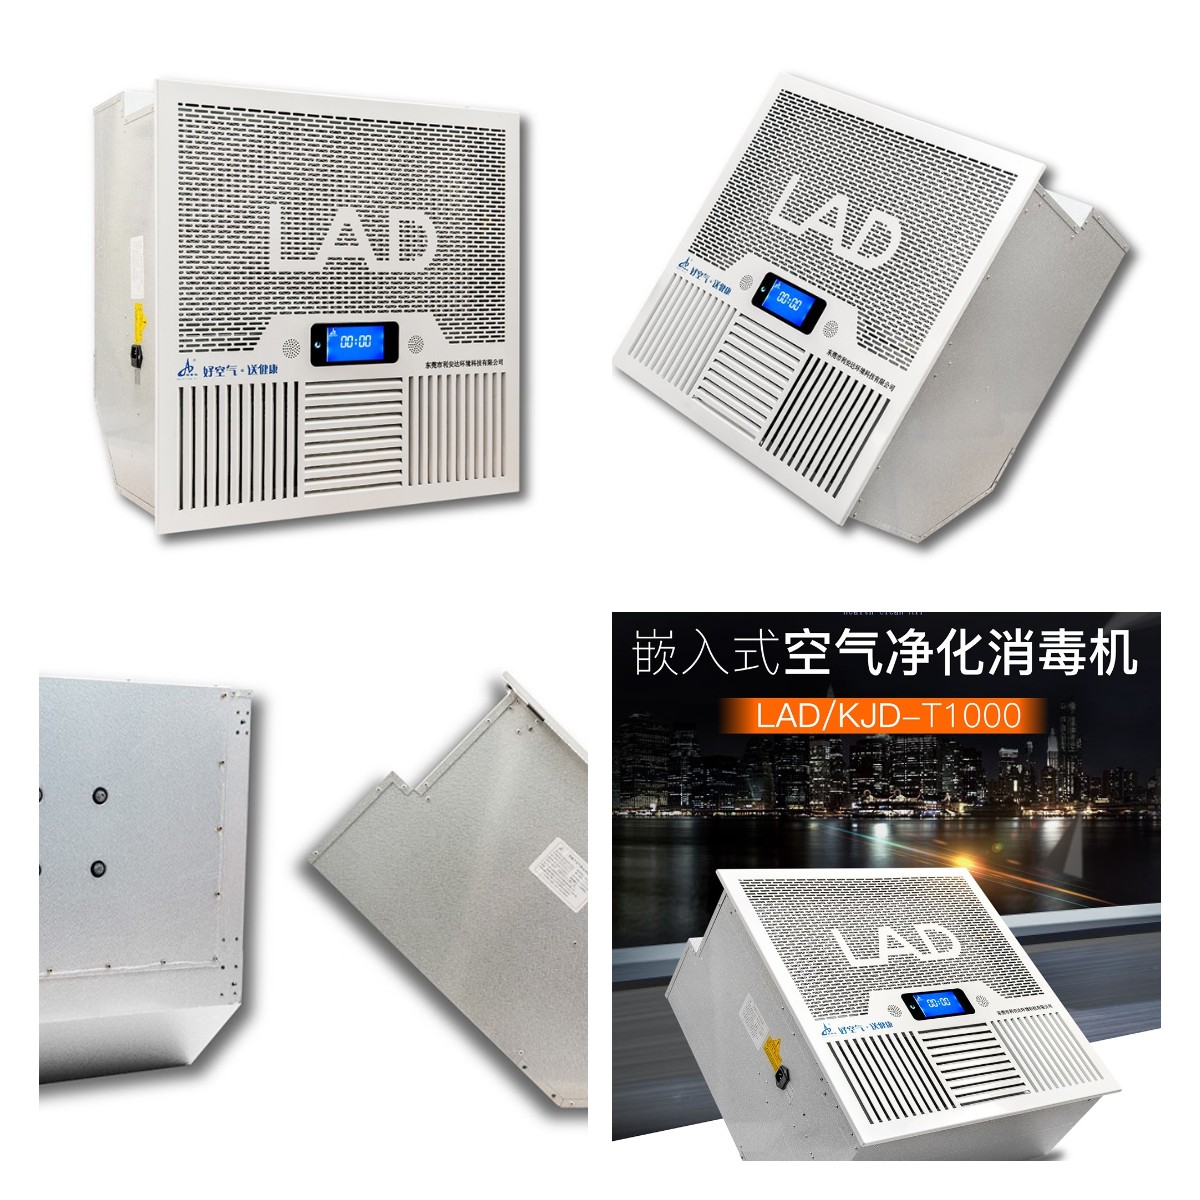 LAD/KJD-T1000型吸顶式空气净化消毒机.jpg